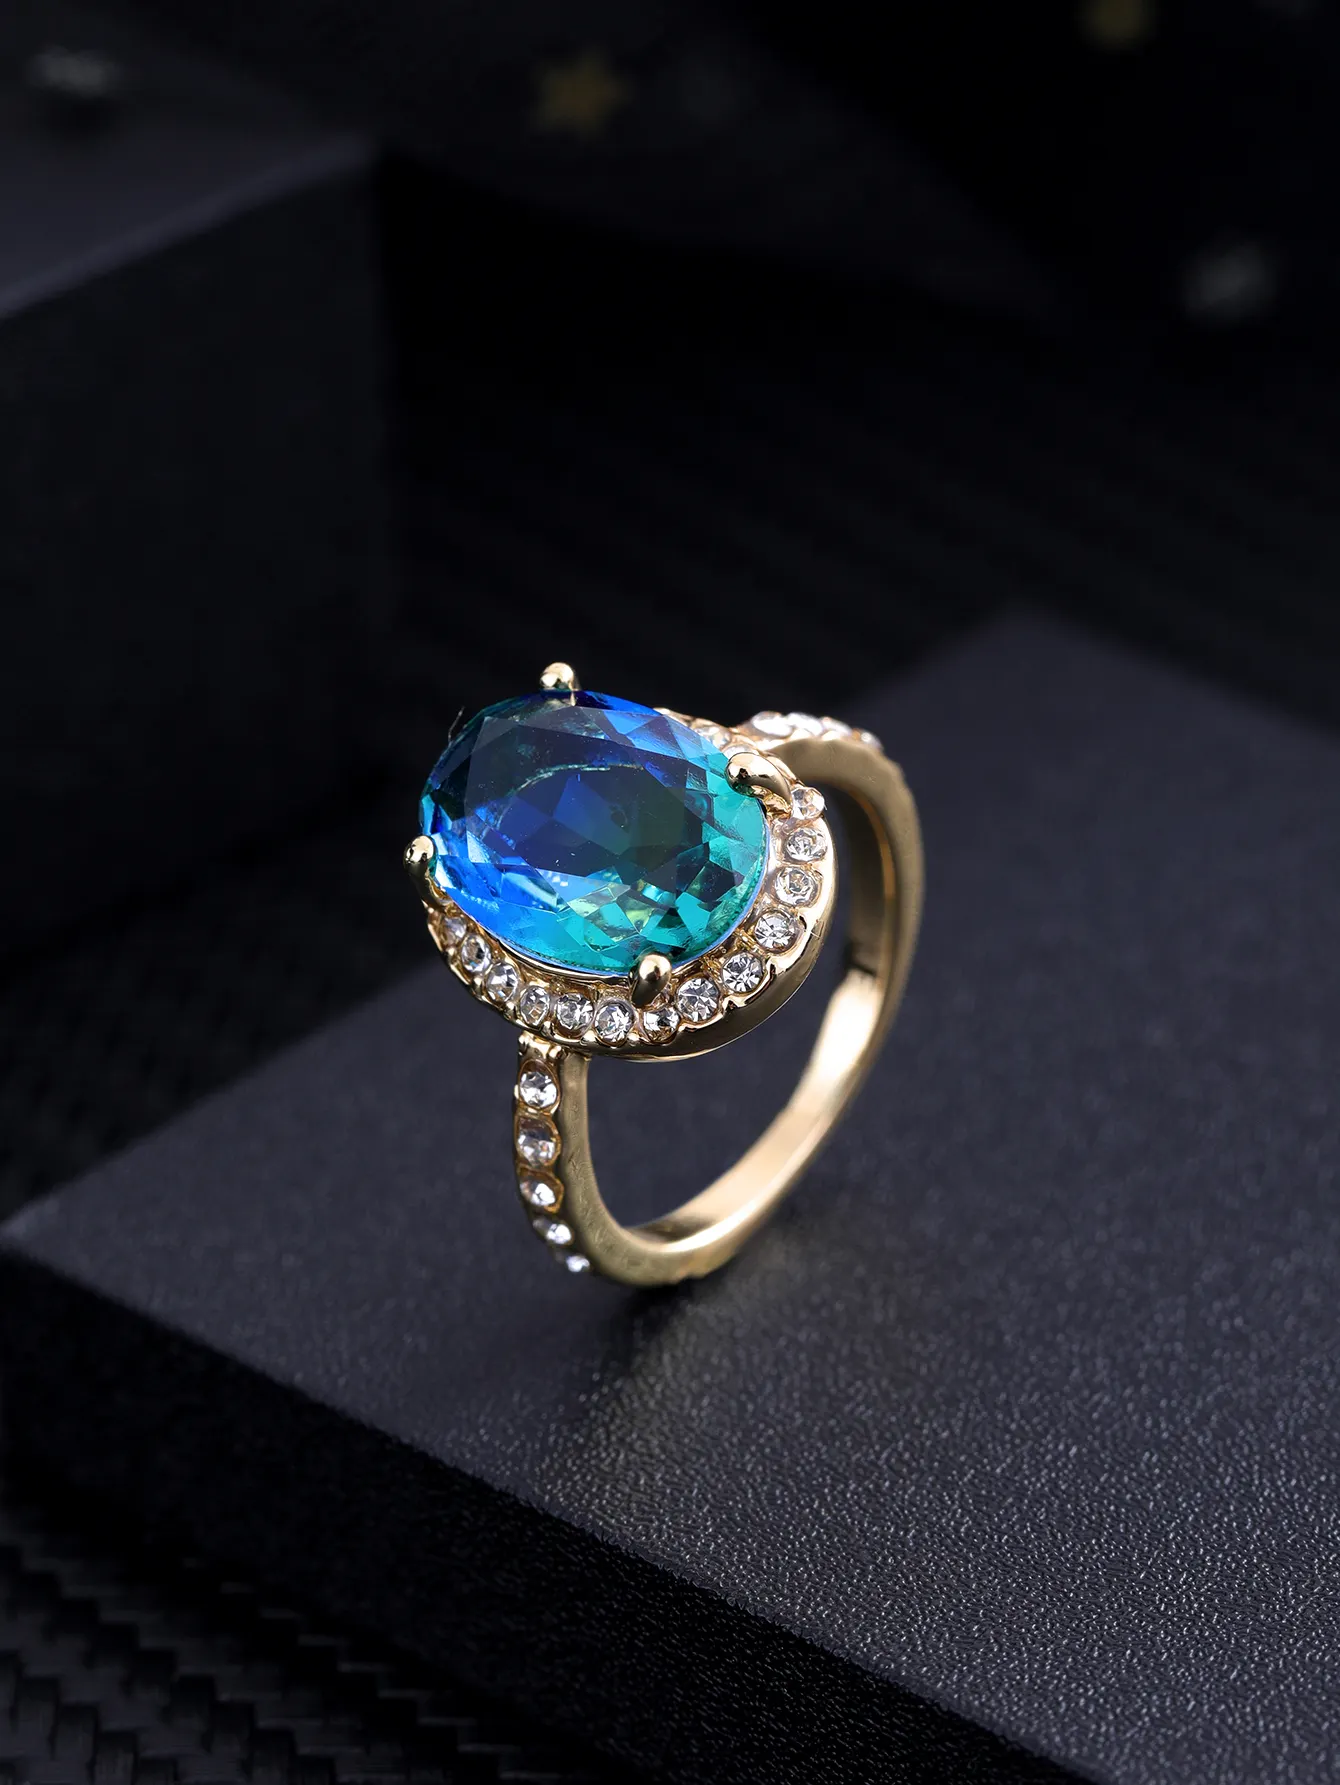 Joyería Europea exquisita elegancia estilo clásico redondo Diamante Azul Real Corazón del anillo del mar para mujer